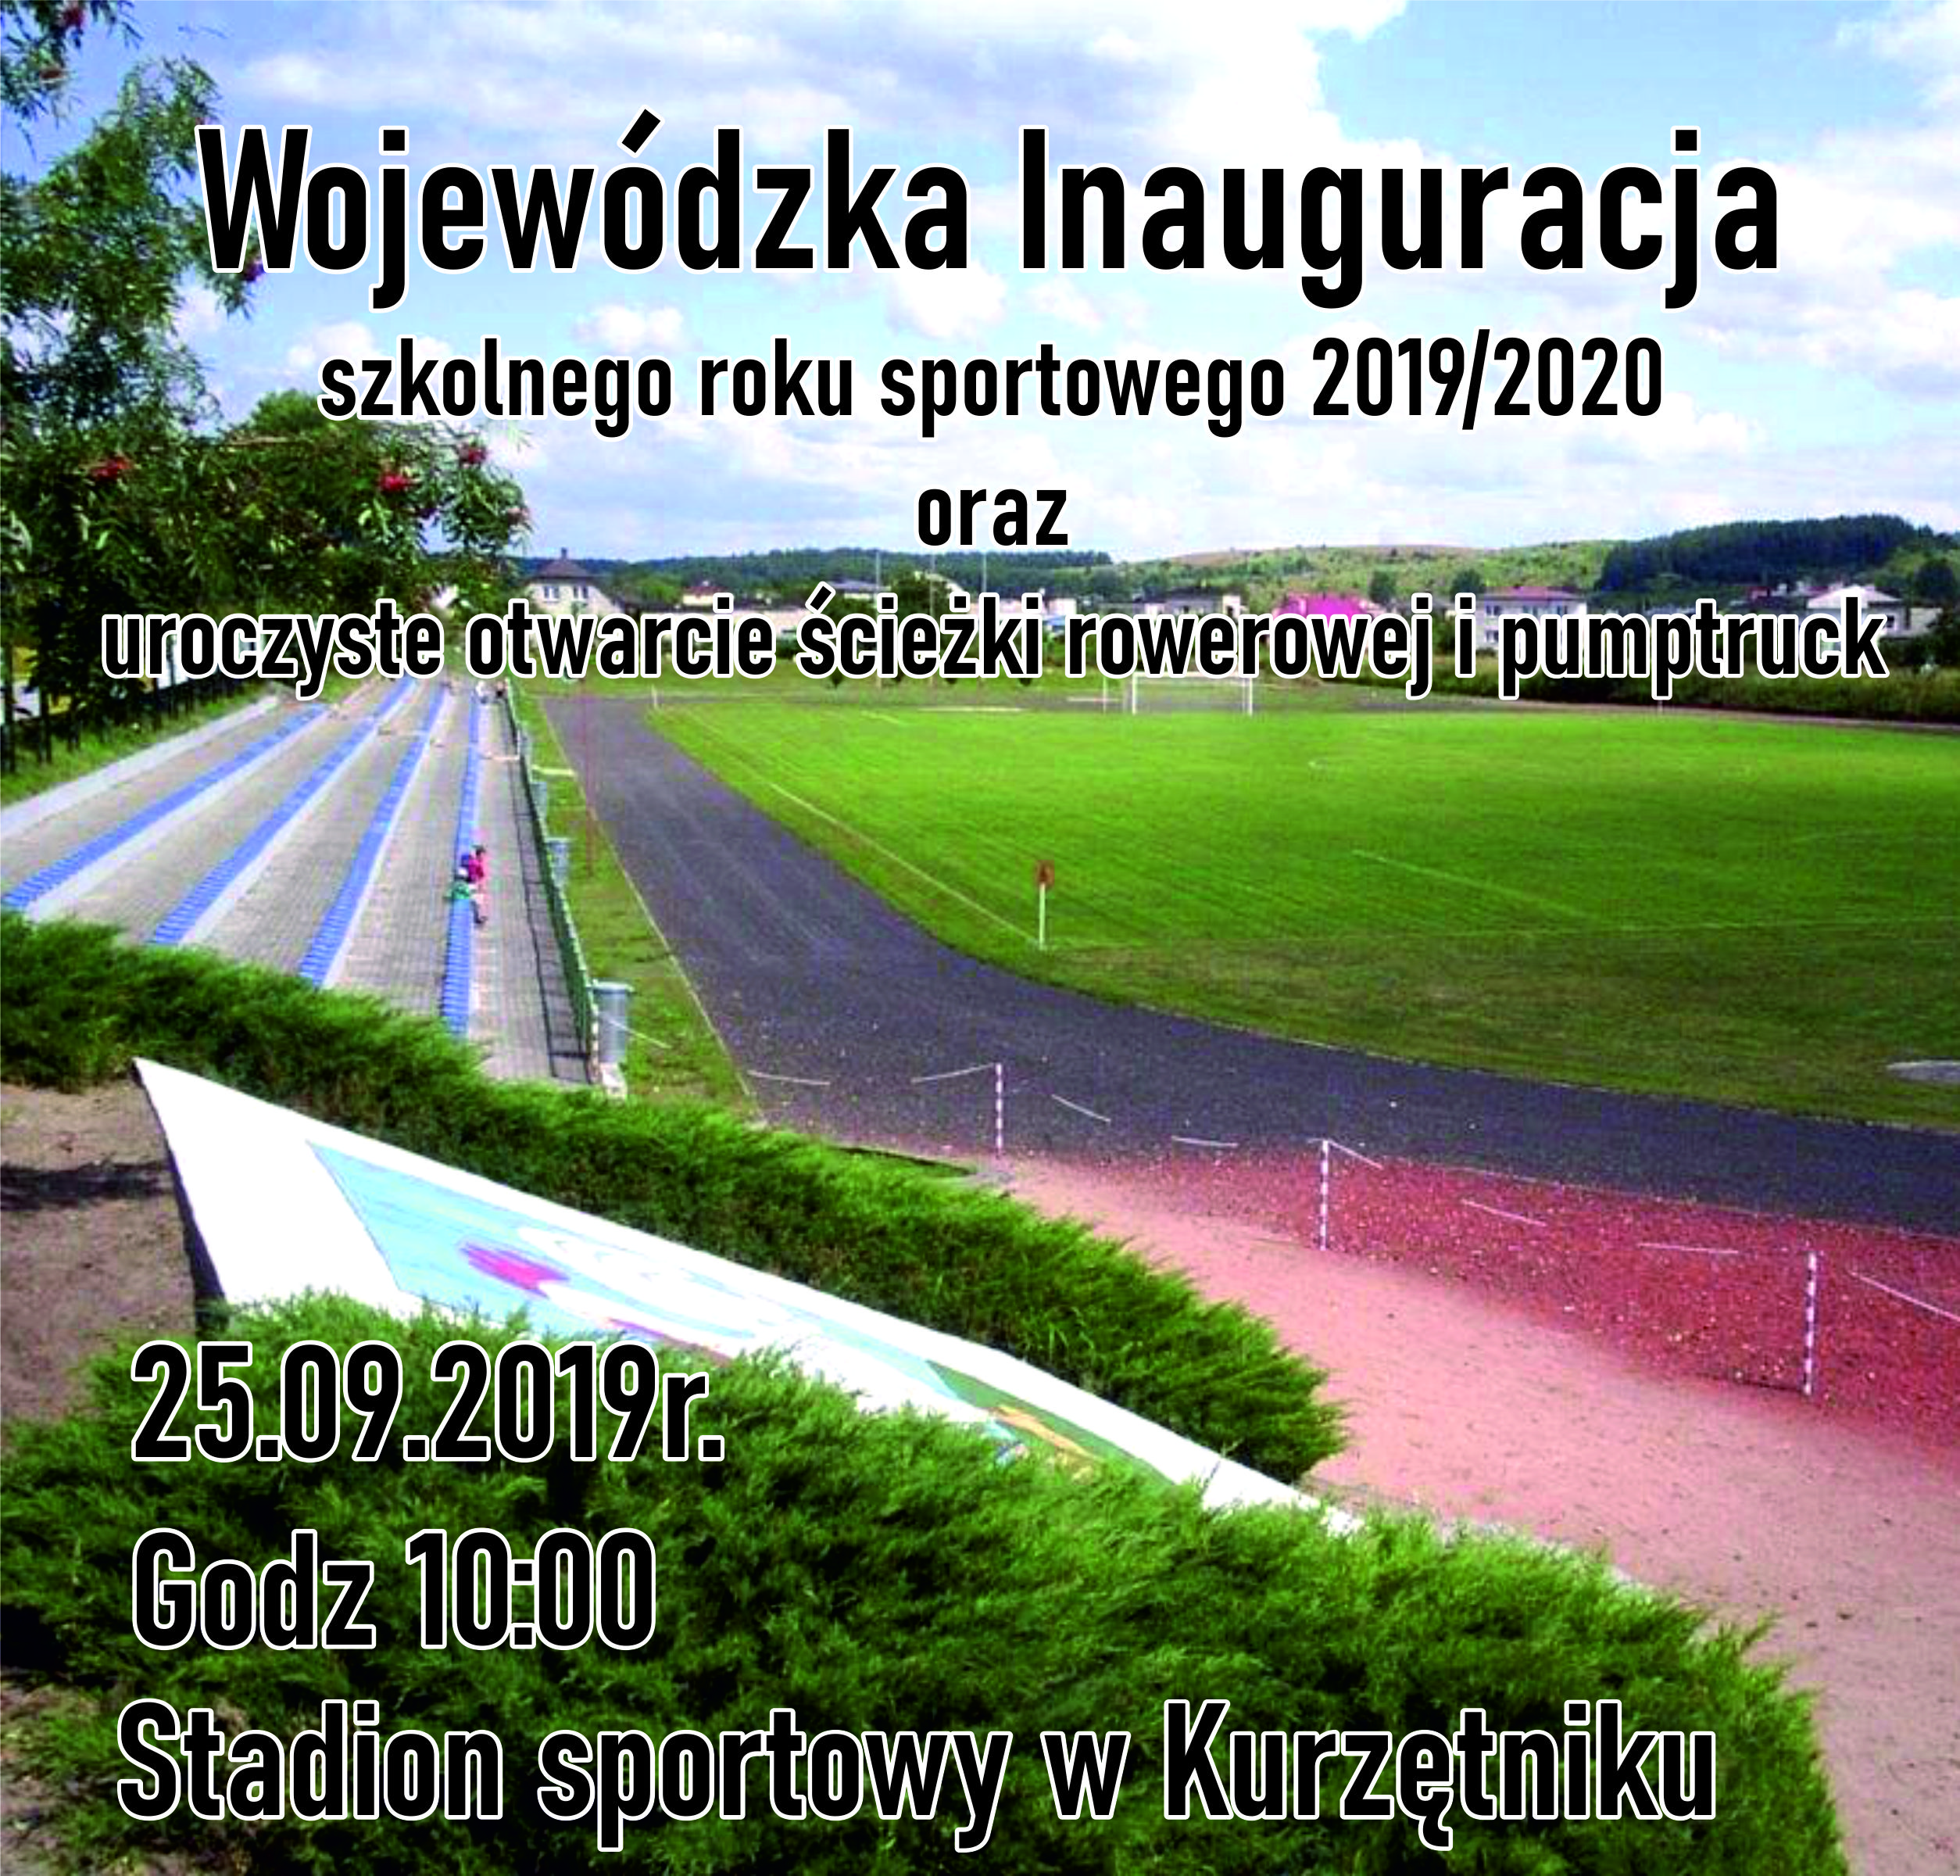 Ilustracja do informacji: Wojewódzka Inauguracja szkolnego roku sportowego 2019/2020 oraz uroczyste otwarcie ścieżki rowerowej i pumptruck